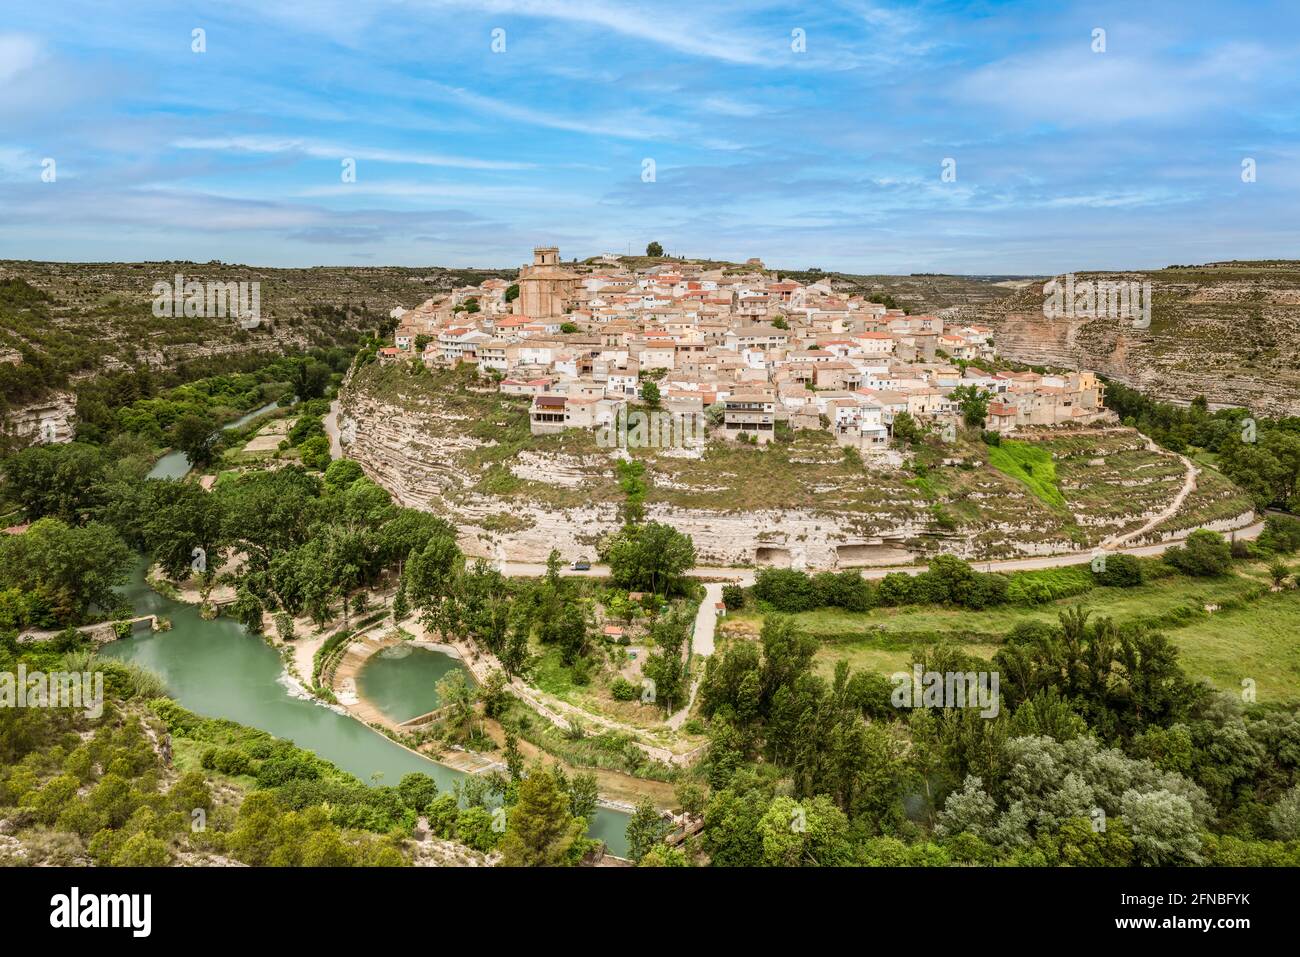 Vista panorámica del pequeño pueblo de Jorquera en el meandro del río Jucar, provincia de Albacete, España Foto de stock